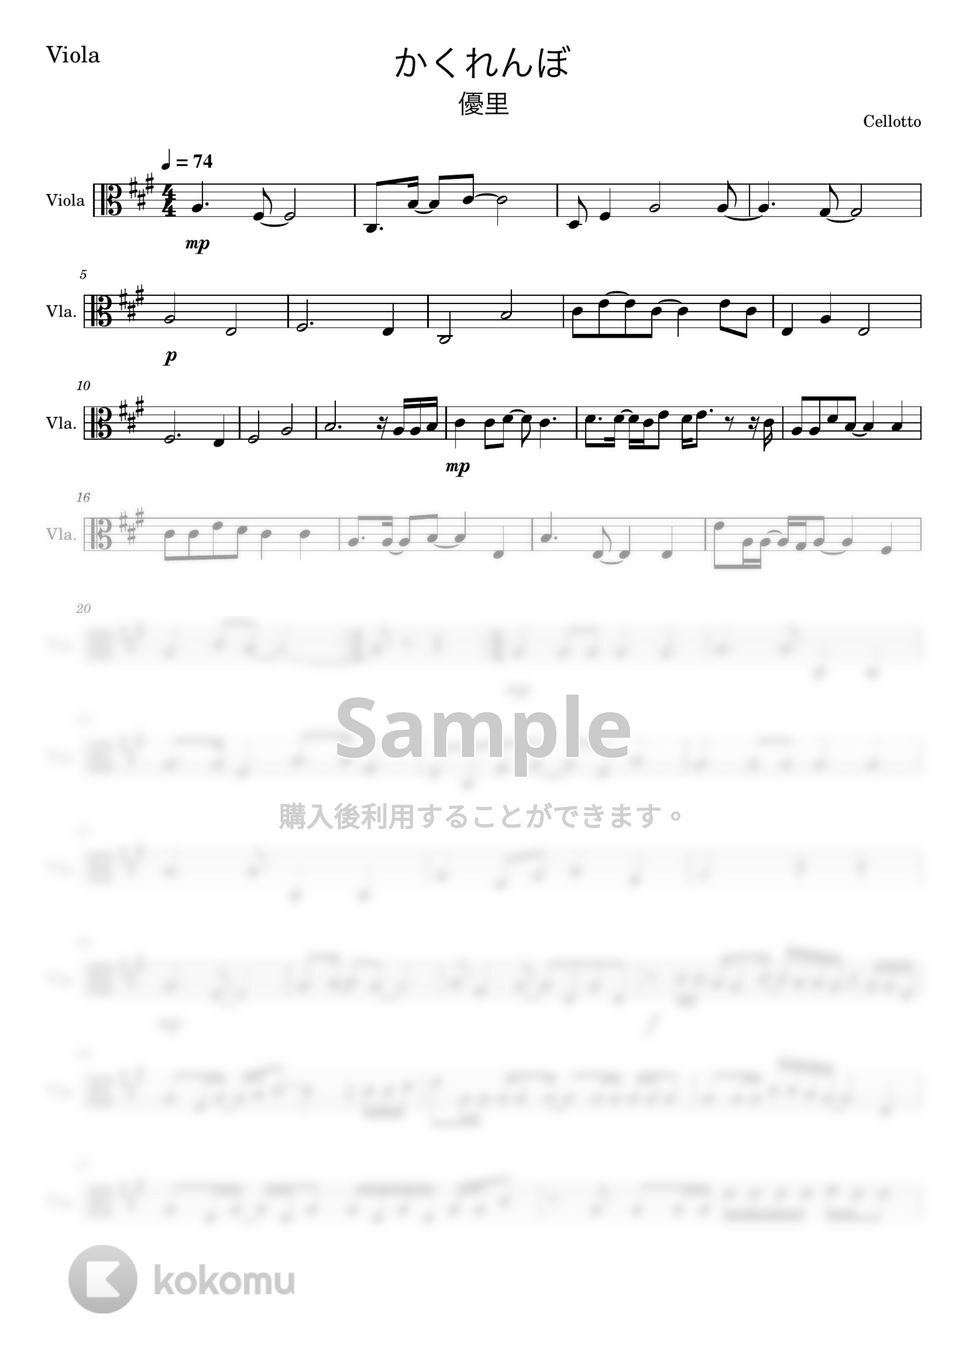 優里 - かくれんぼ (ヴィオラ-弦楽四重奏) by Cellotto